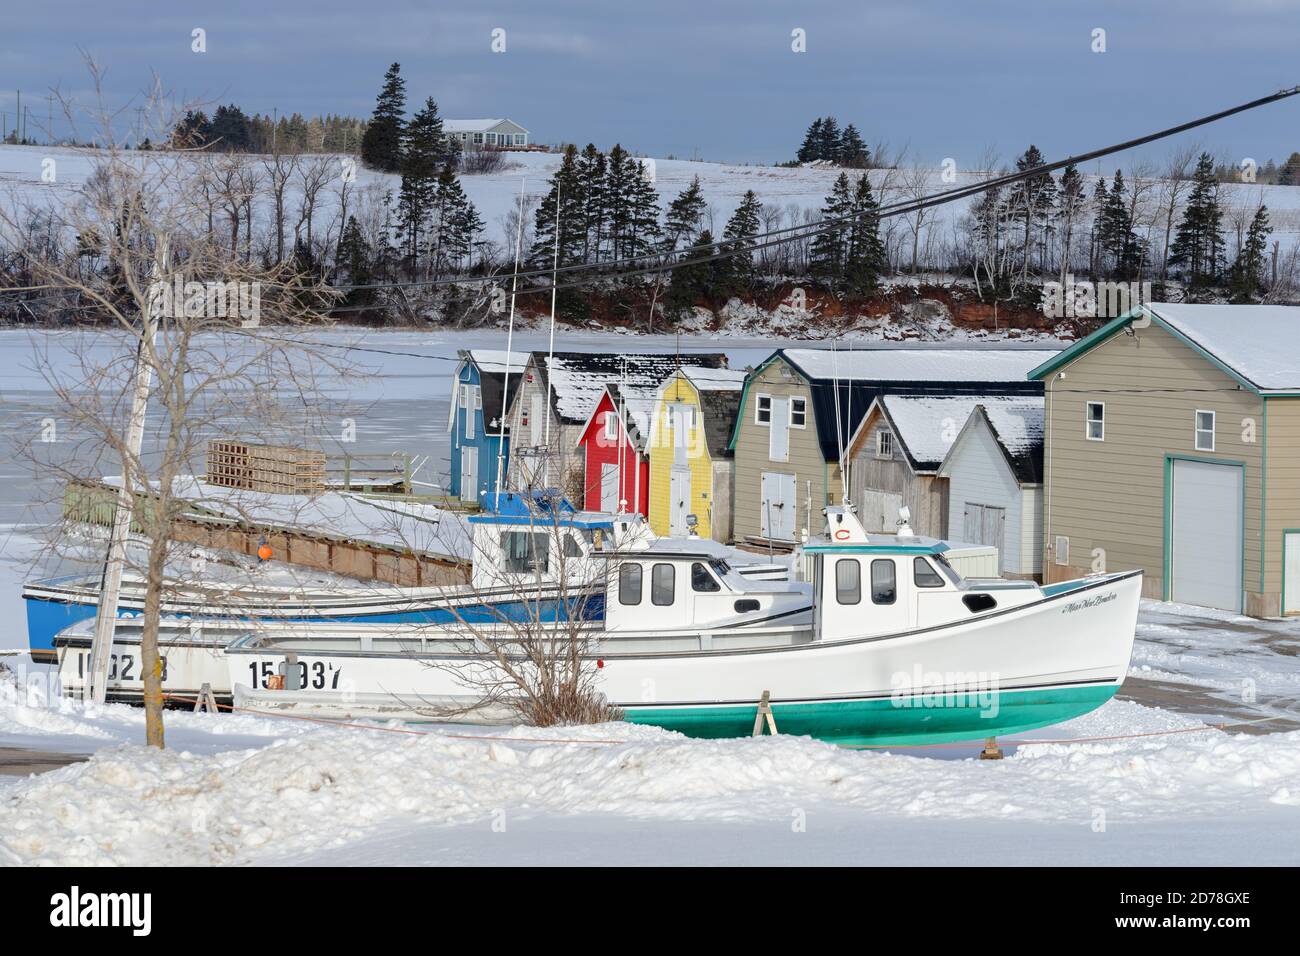 Barche da pesca tirate fuori dall'acqua per l'inverno nella rurale Isola del Principe Edoardo, Canada. Foto Stock